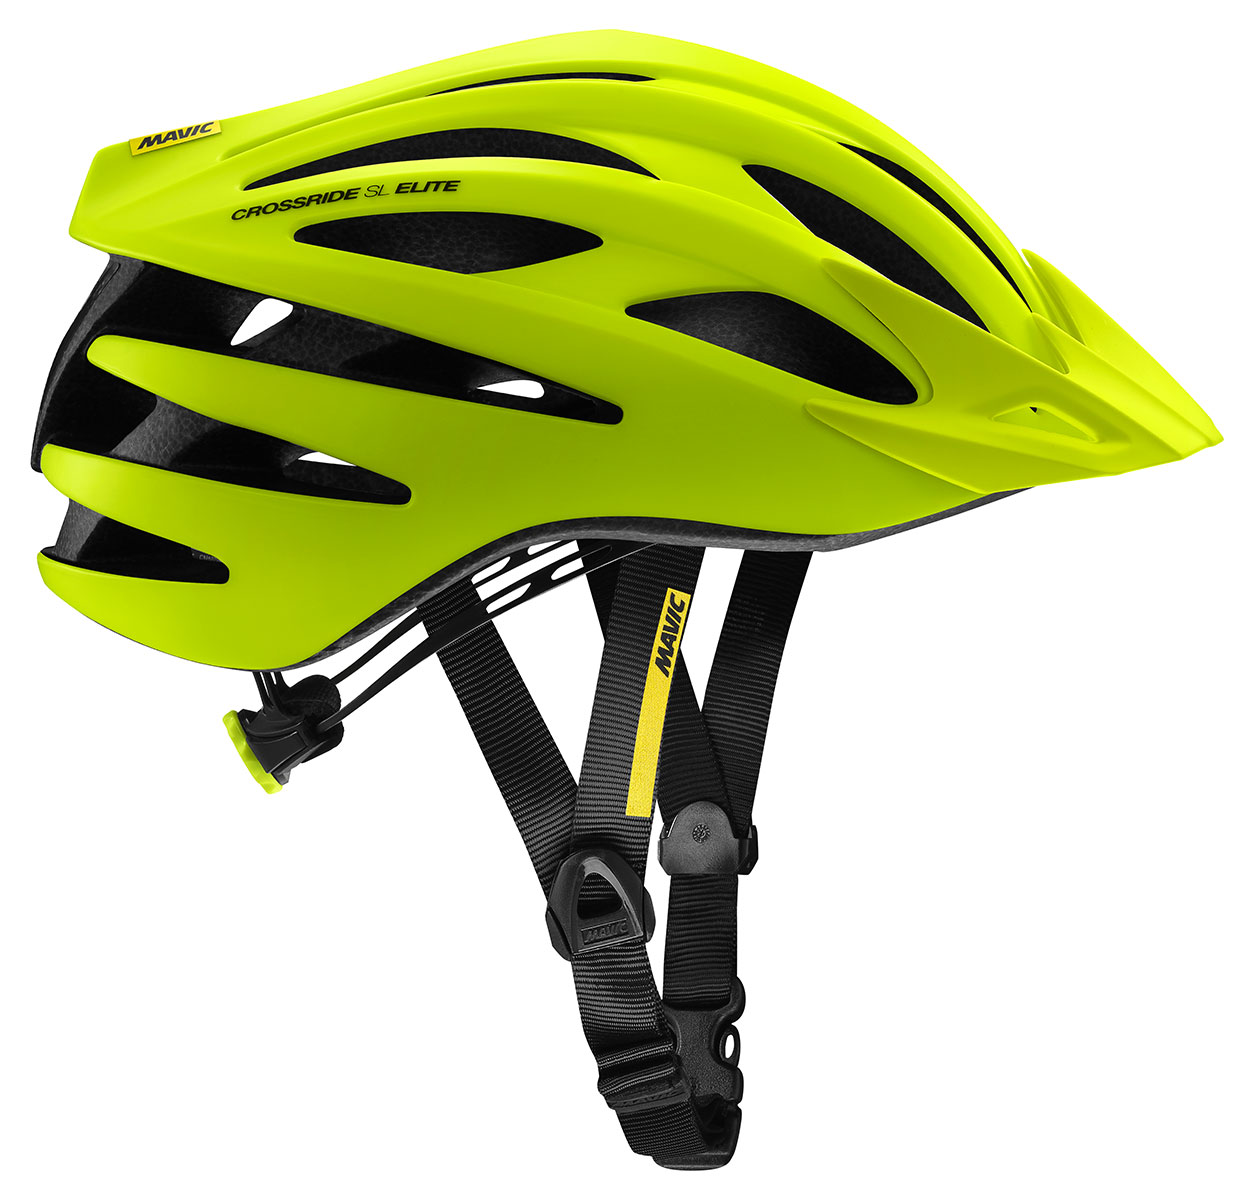 Lehká výkonnostní cyklistická helma Mavic Crossride SL Elite Safety Yellow/Black L